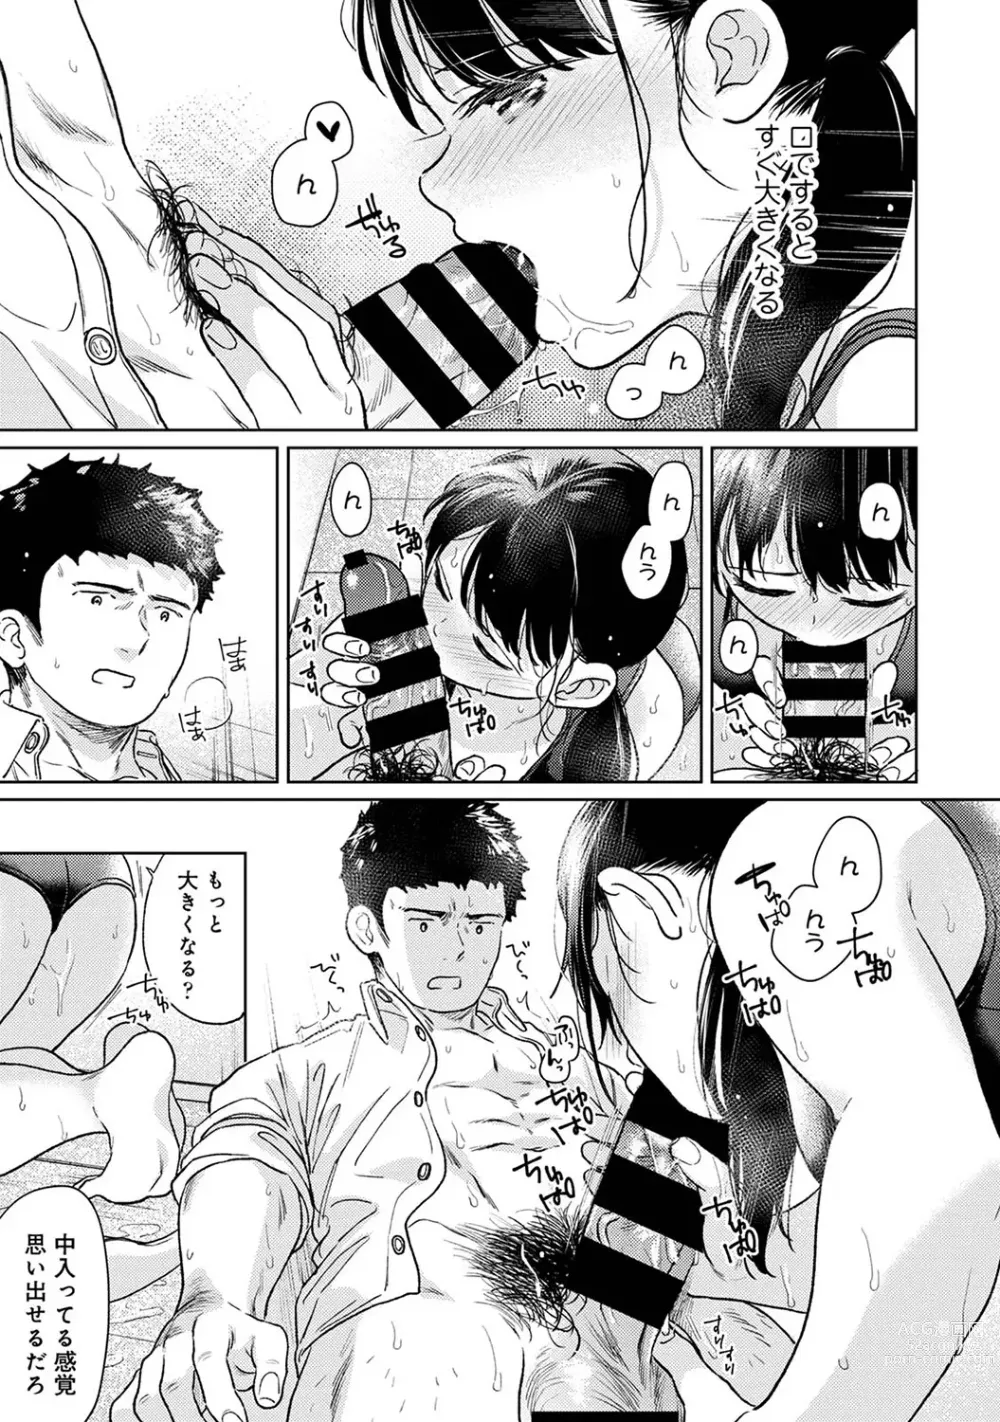 Page 31 of manga COMIC Ananga Ranga Vol. 101